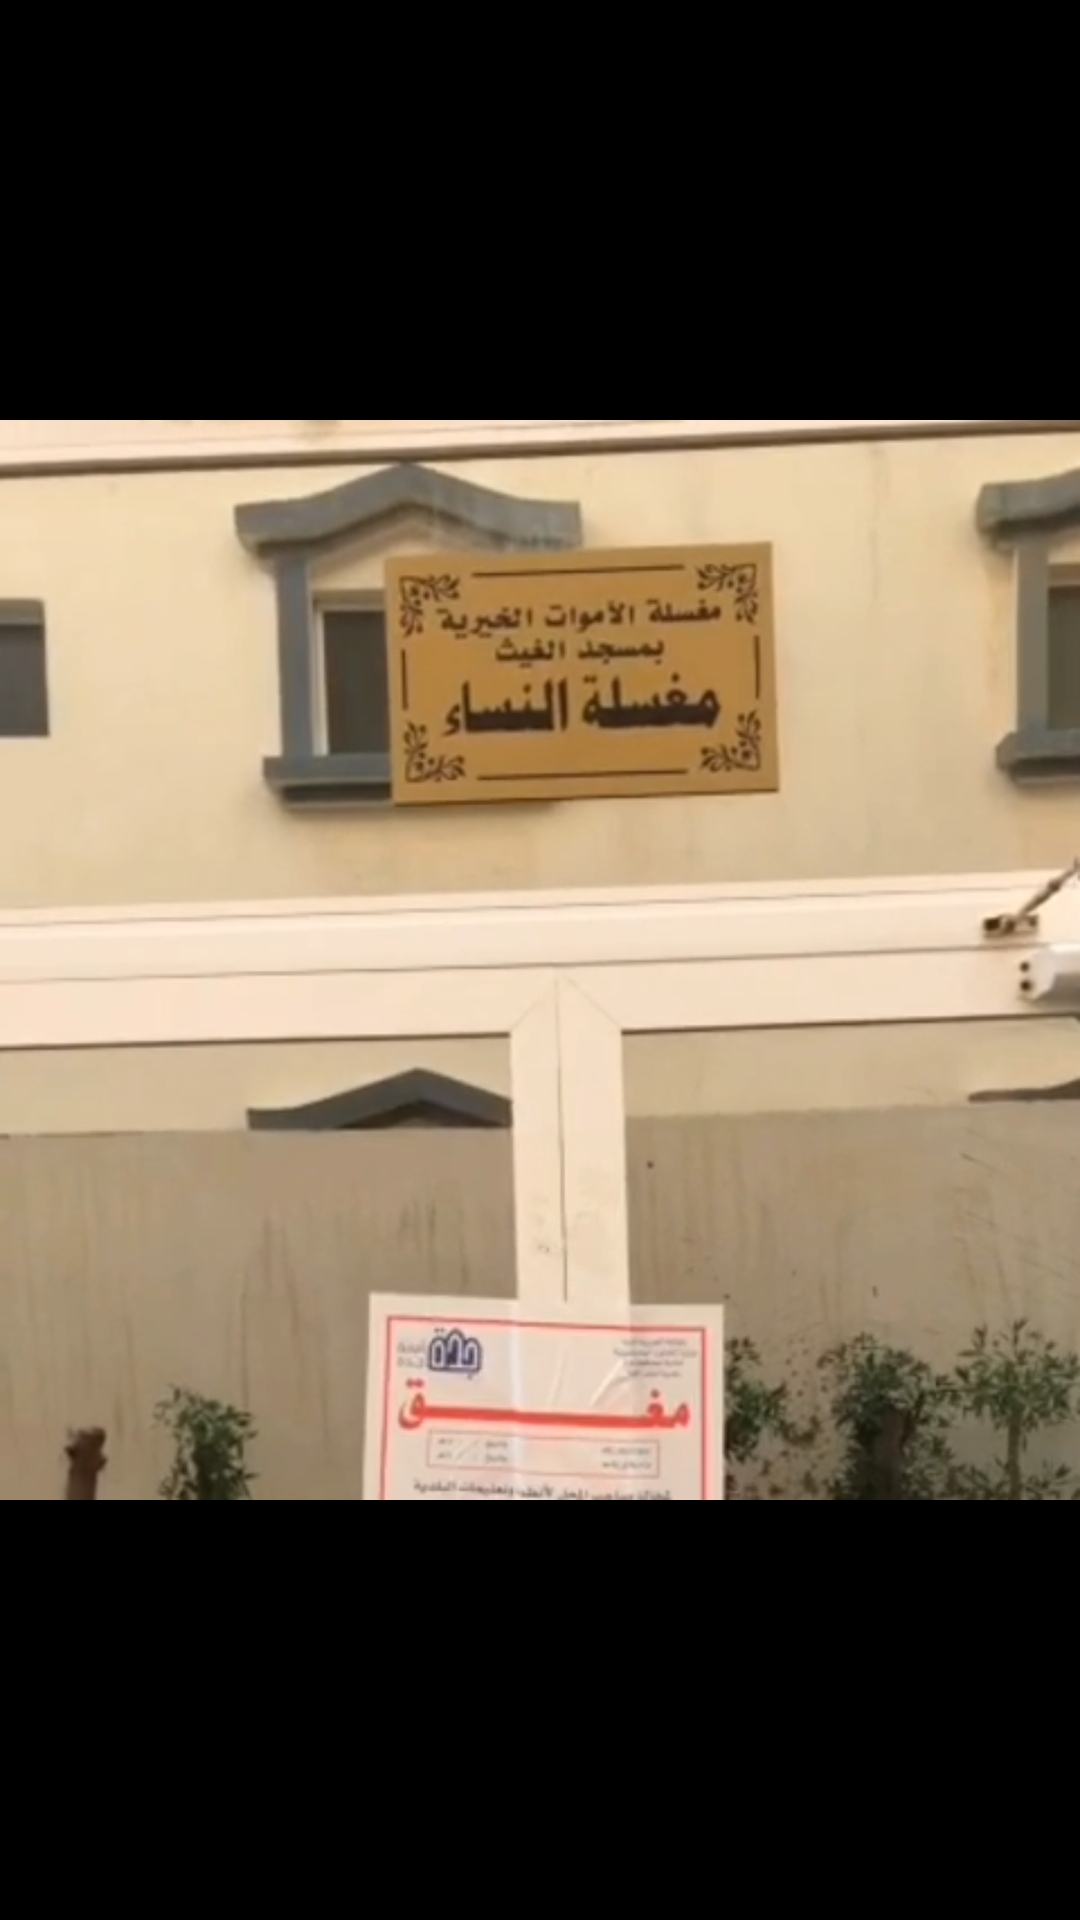 مخالفات مجهولة تغلق مغسلة موتى في جدة